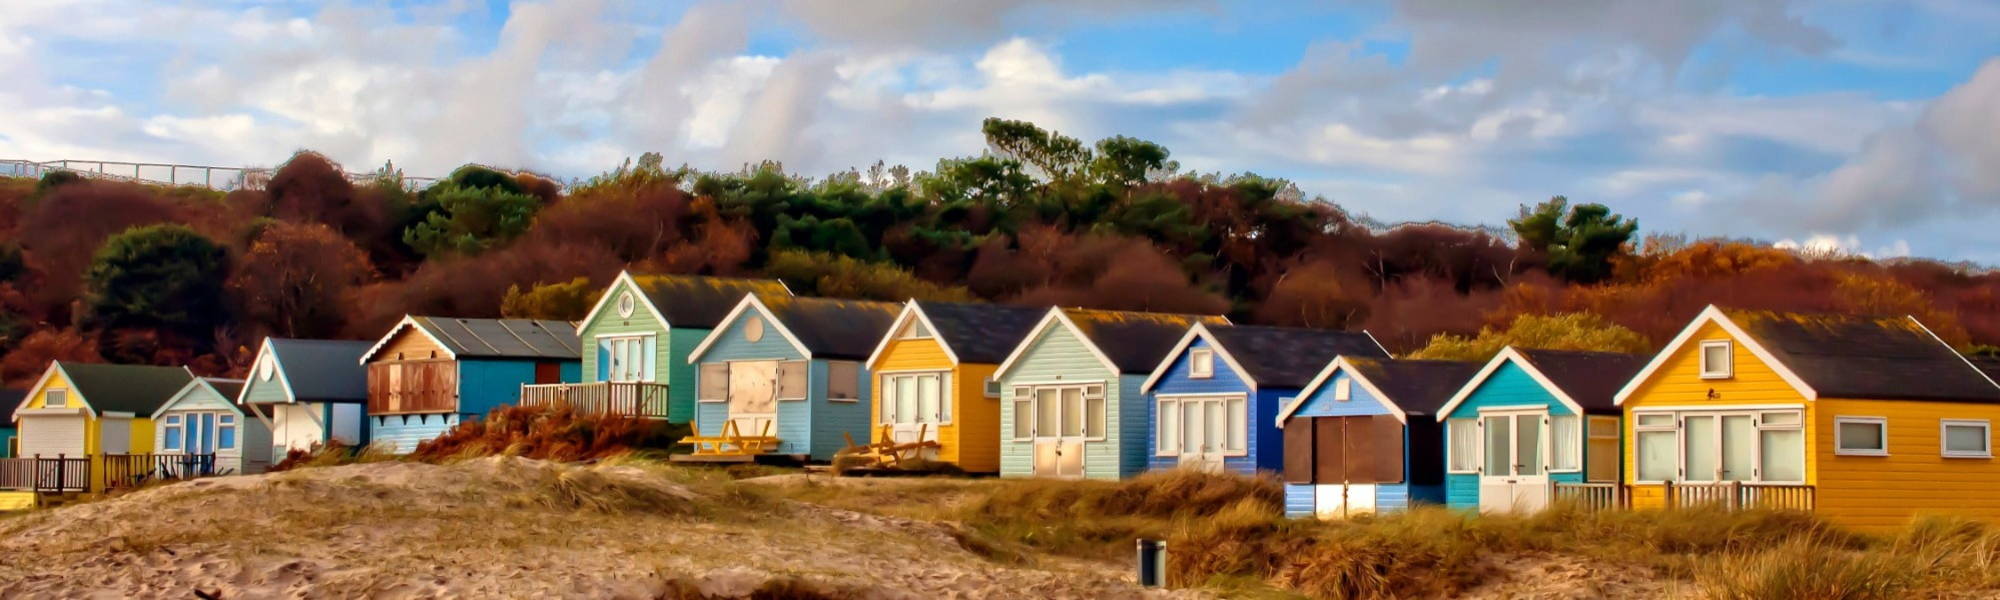 Beach Huts Hengistbury Head Bournemouth Dorset England UK